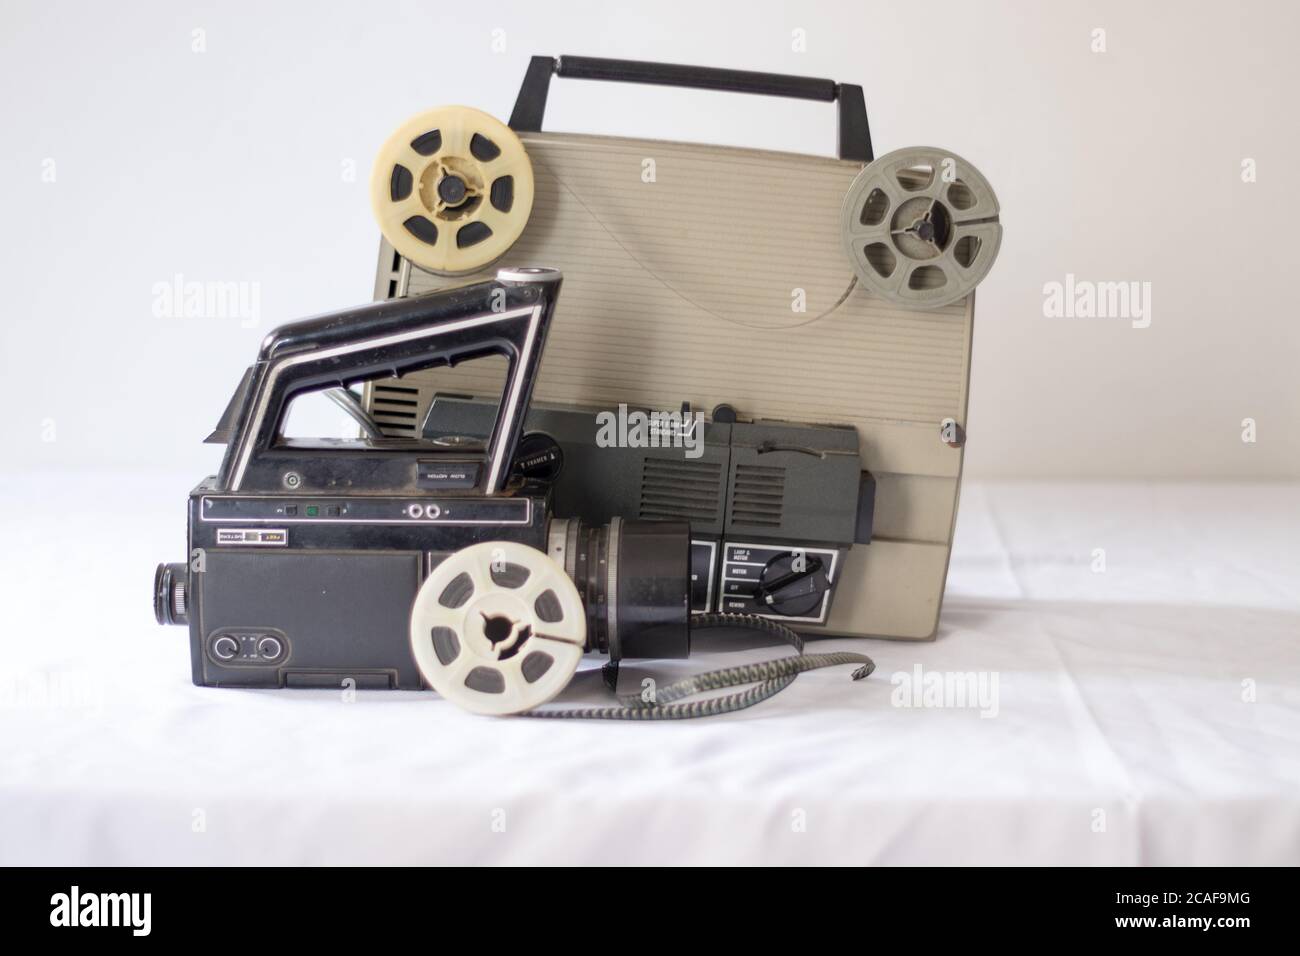 Super 8 Ireland - Buy super8 camera & projector - 8mm film equipment